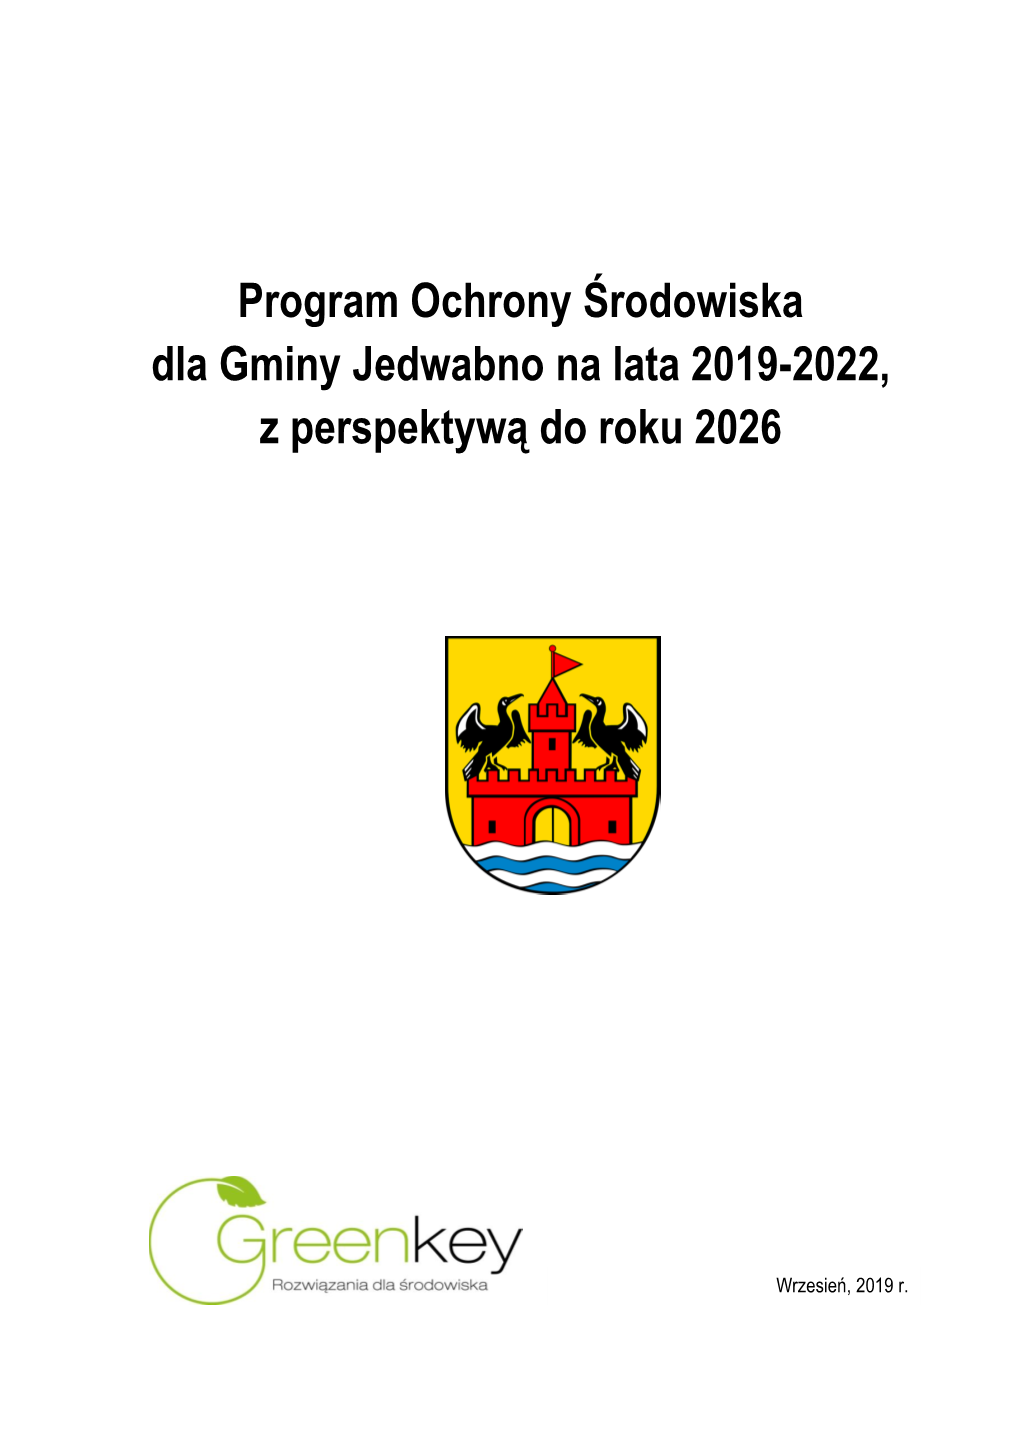 Program Ochrony Środowiska Dla Gminy Jedwabno Na Lata 2019-2022, Z Perspektywą Do Roku 2026